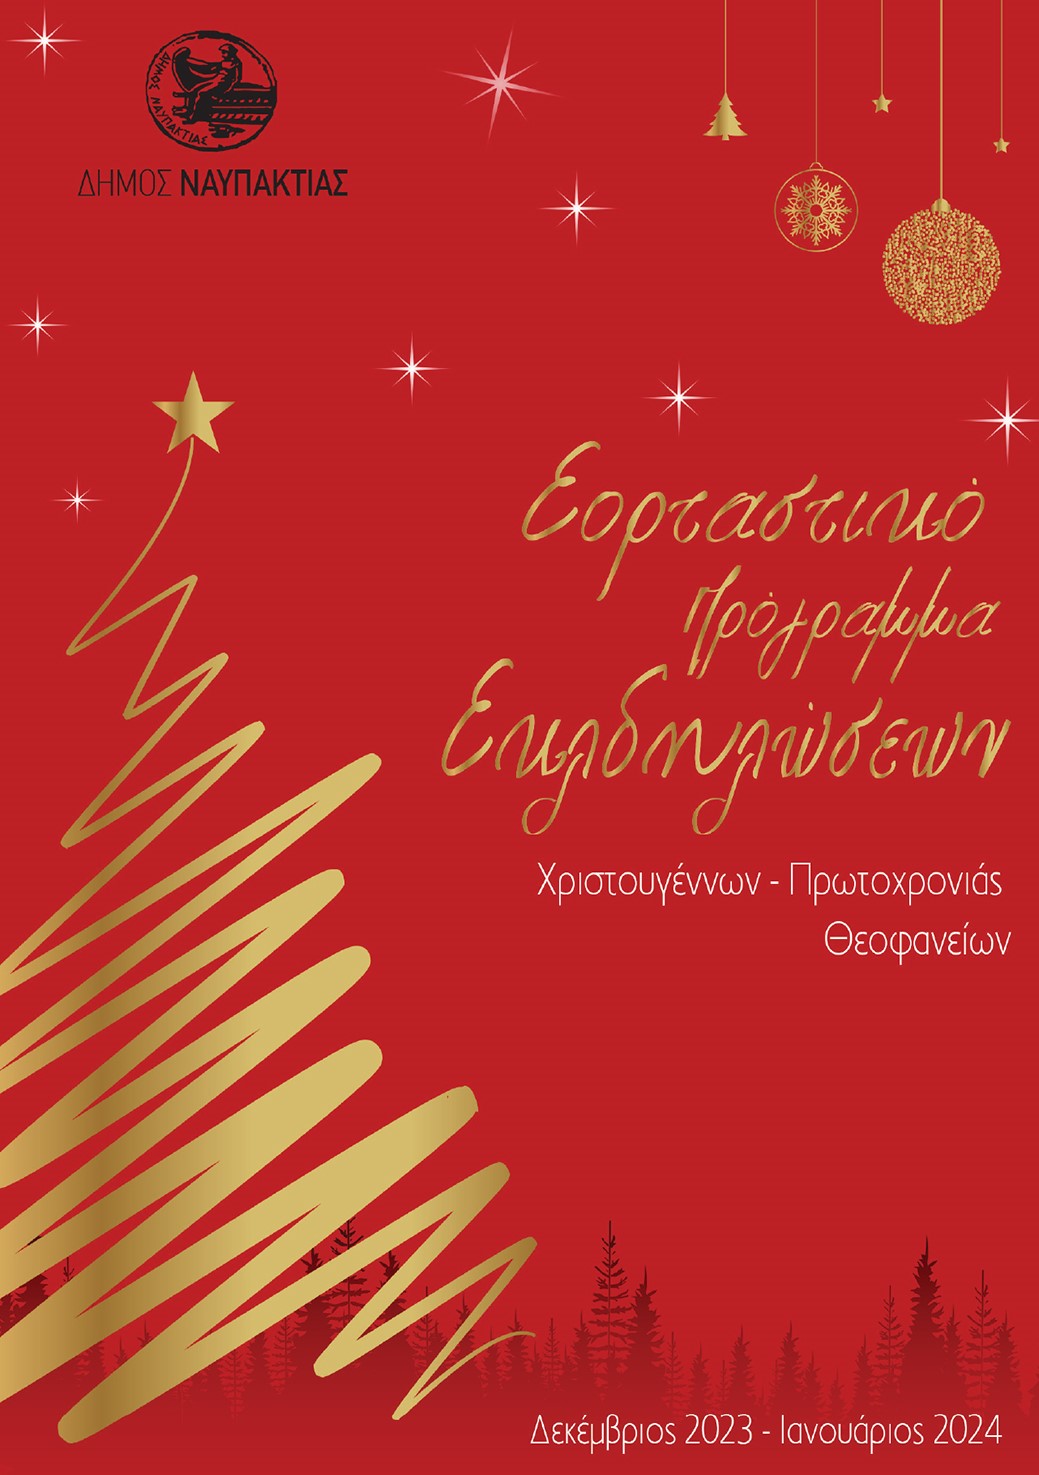 Δήμος Ναυπακτίας: Και αυτά τα Χριστούγεννα γιορτάζουμε μαζί!